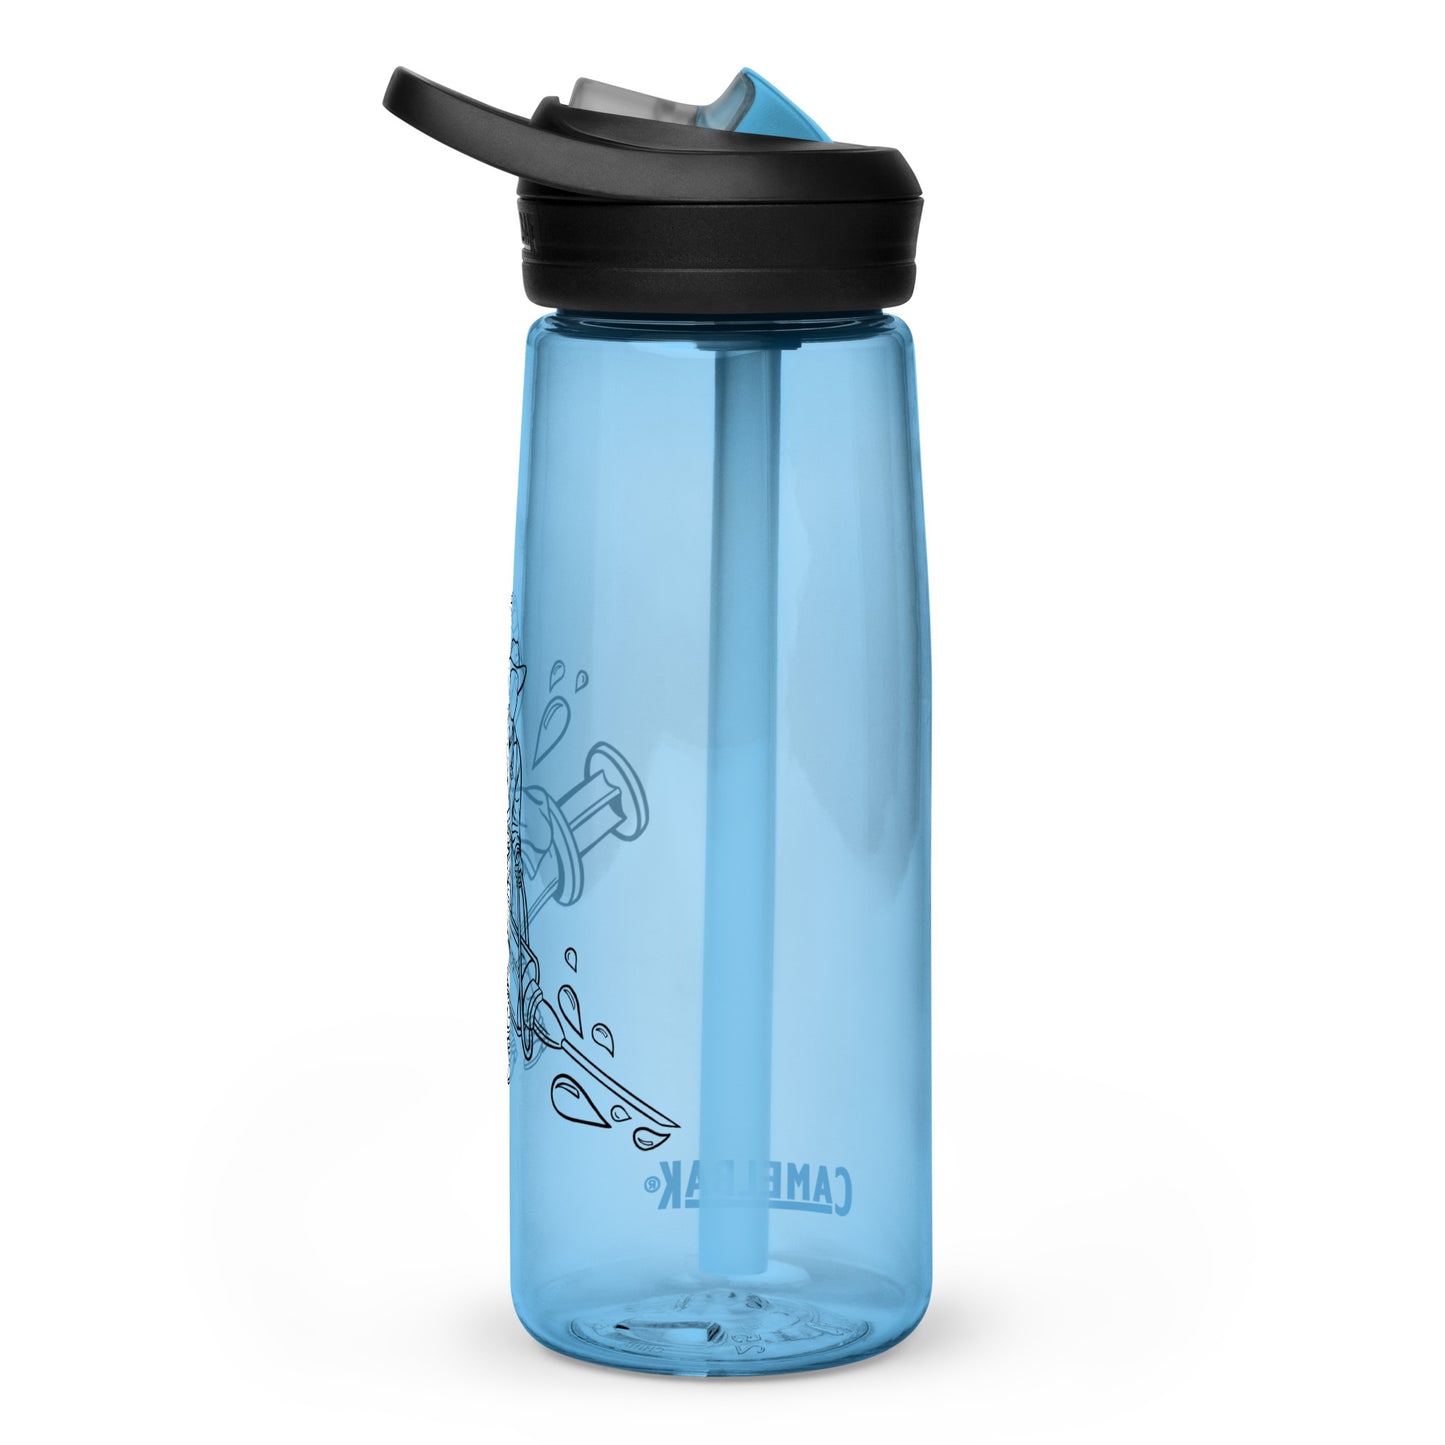 TWNM- Camelbak Water Bottle